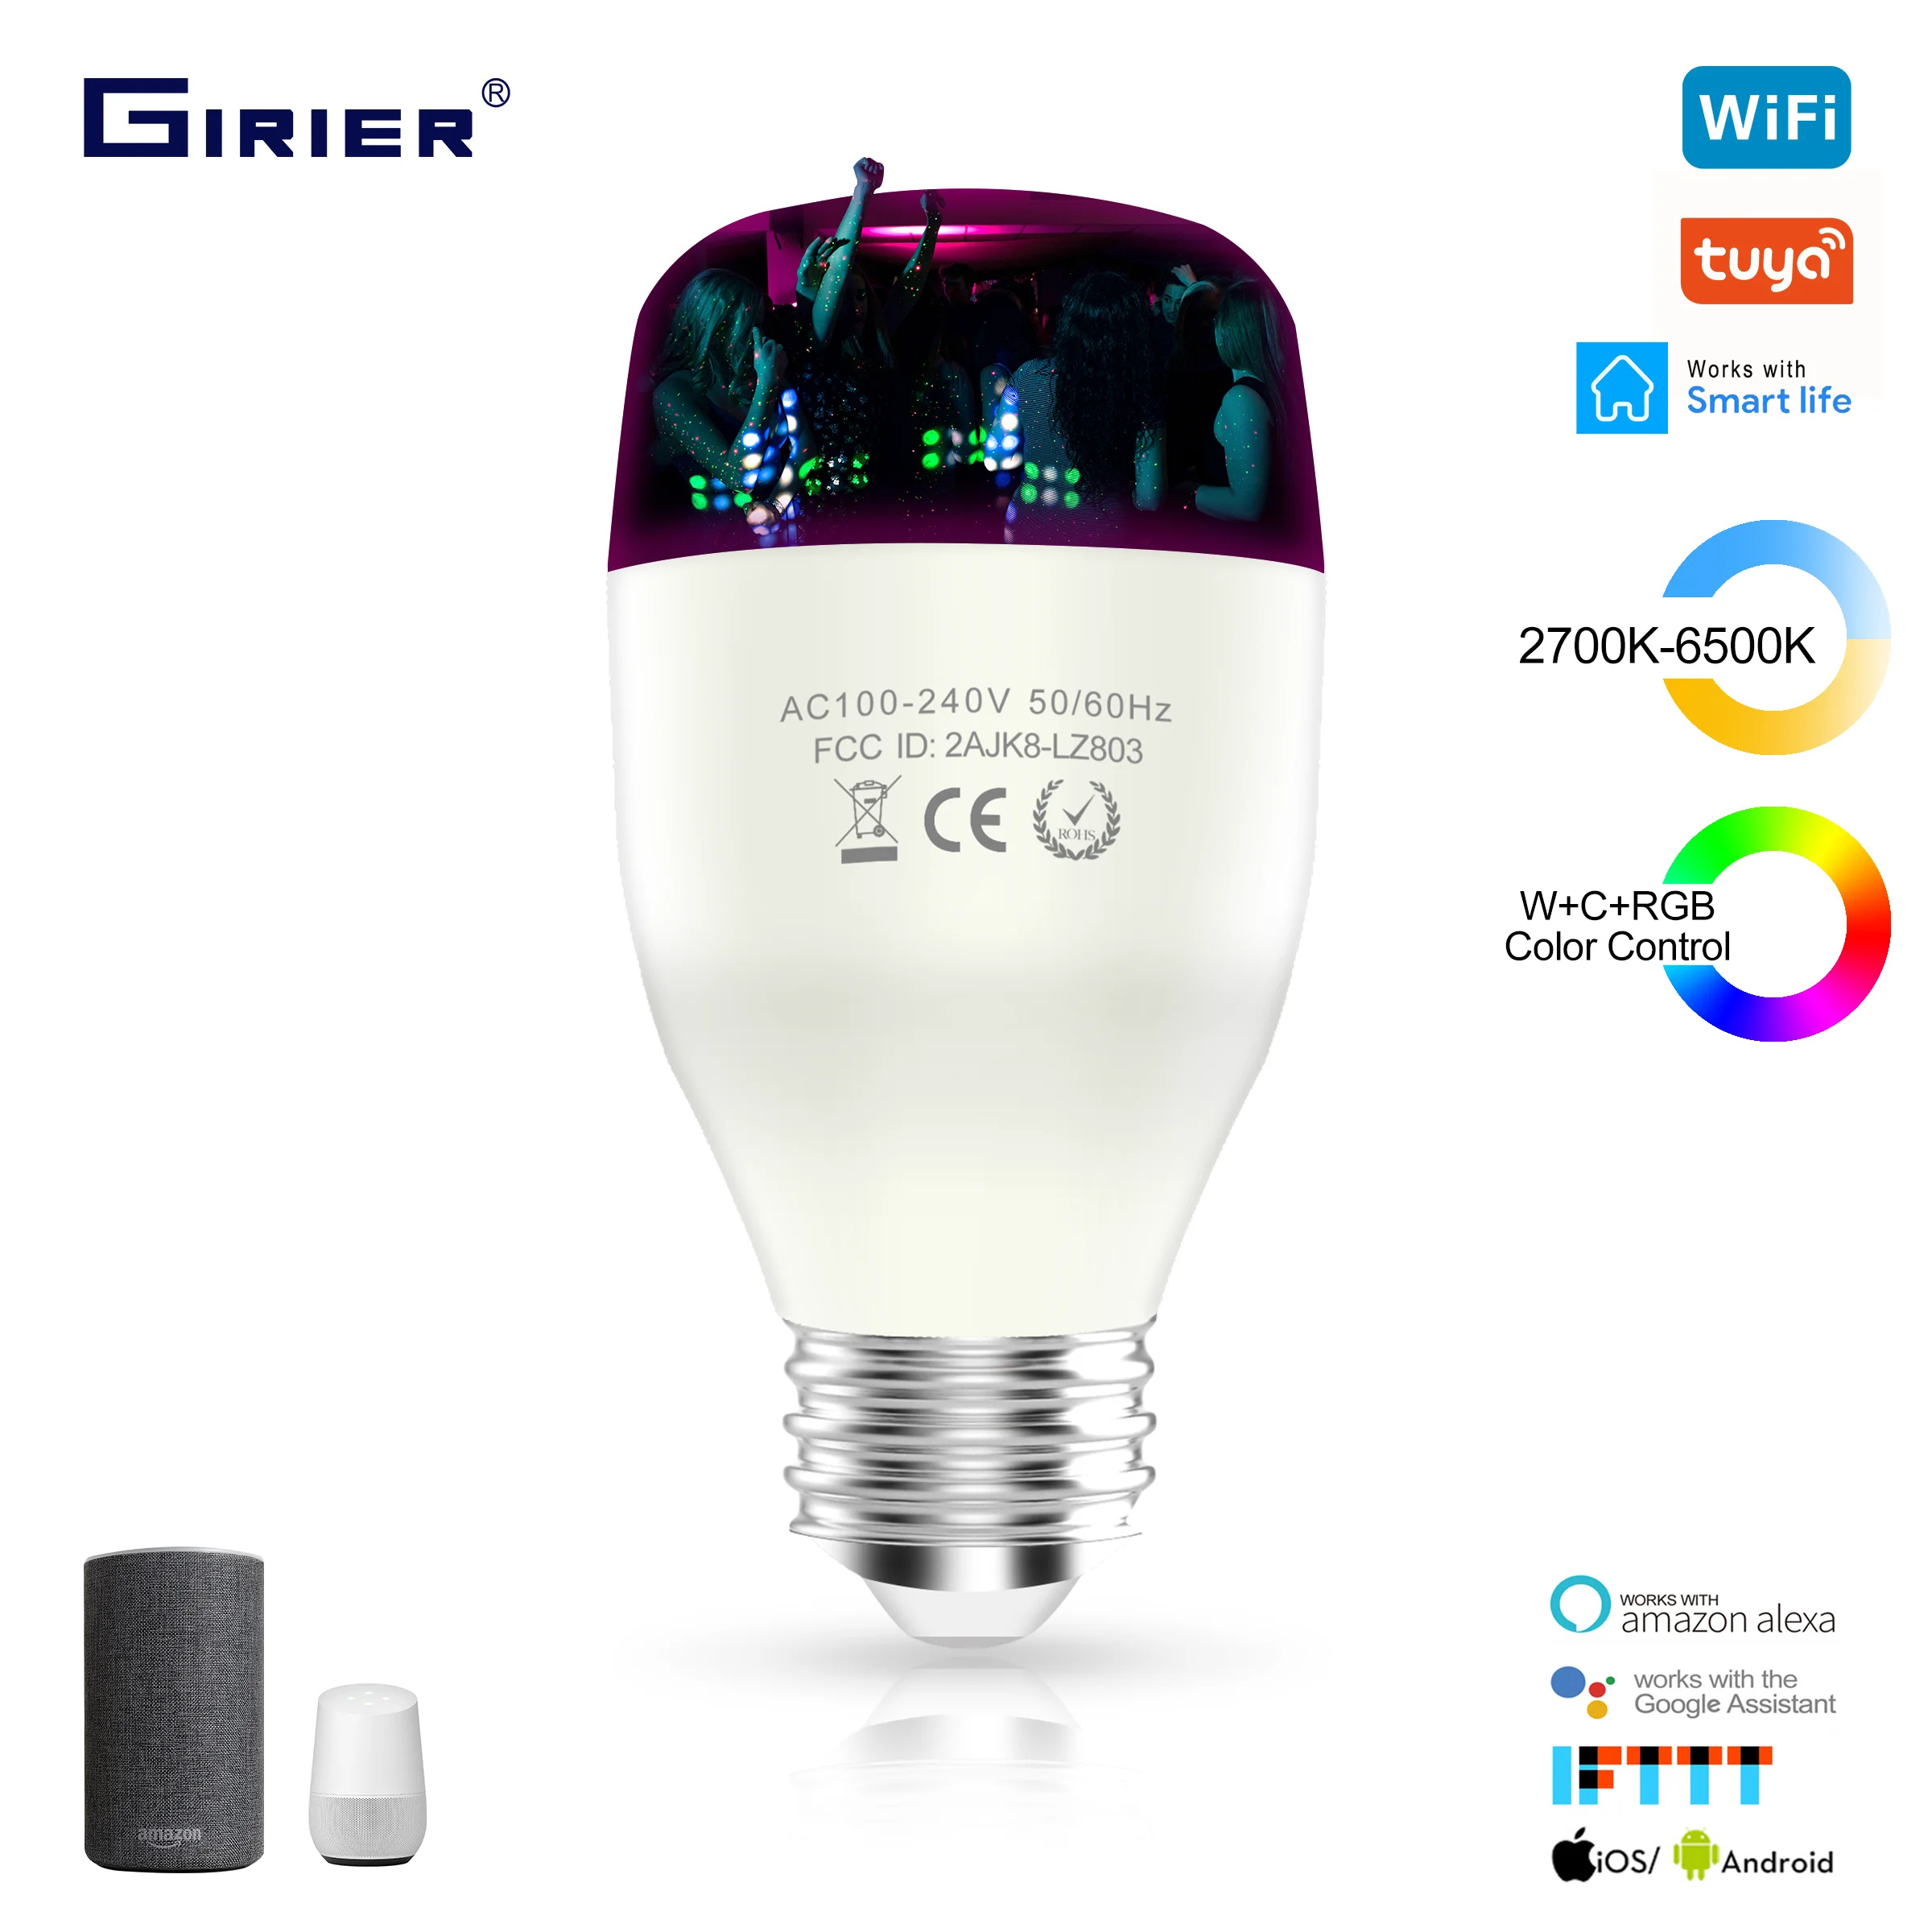 Intelligent WIFI 2,4 GHz Lot de 2 LE Lighting EVER Ampoule LED Intelligente E27 Fonction Minuterie,Contrôle par Voix Compatible avec Google Home Alexa etc Ampoule E27 RGB Couleurs 850LM 9W 